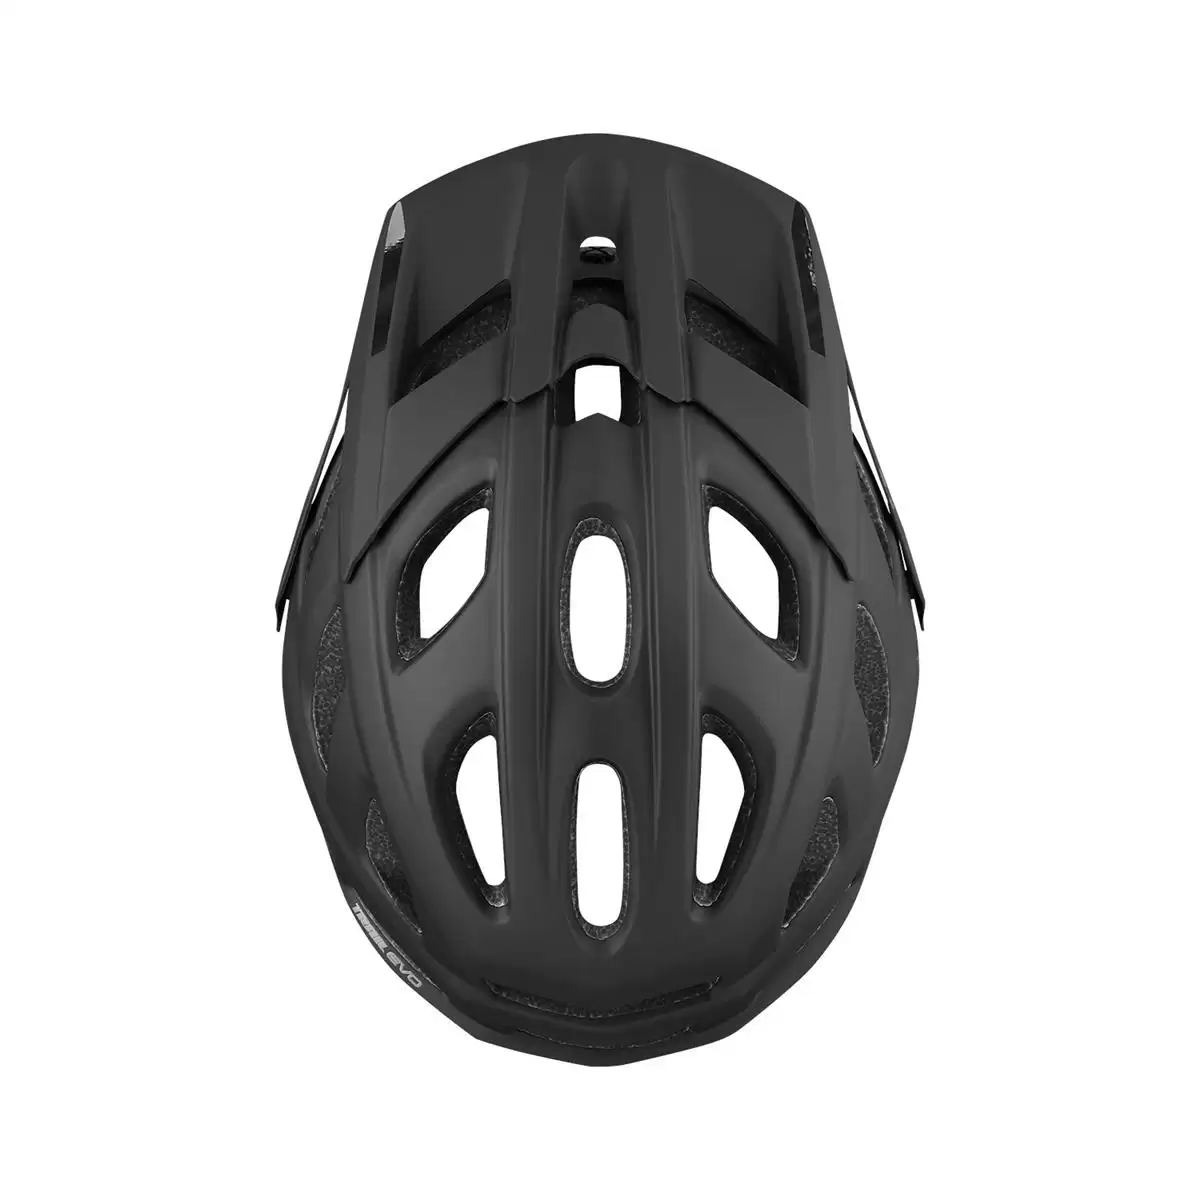 Henduro Helmet Trail Evo E-Bike Edition Black Size XS/S (49-54cm) #2